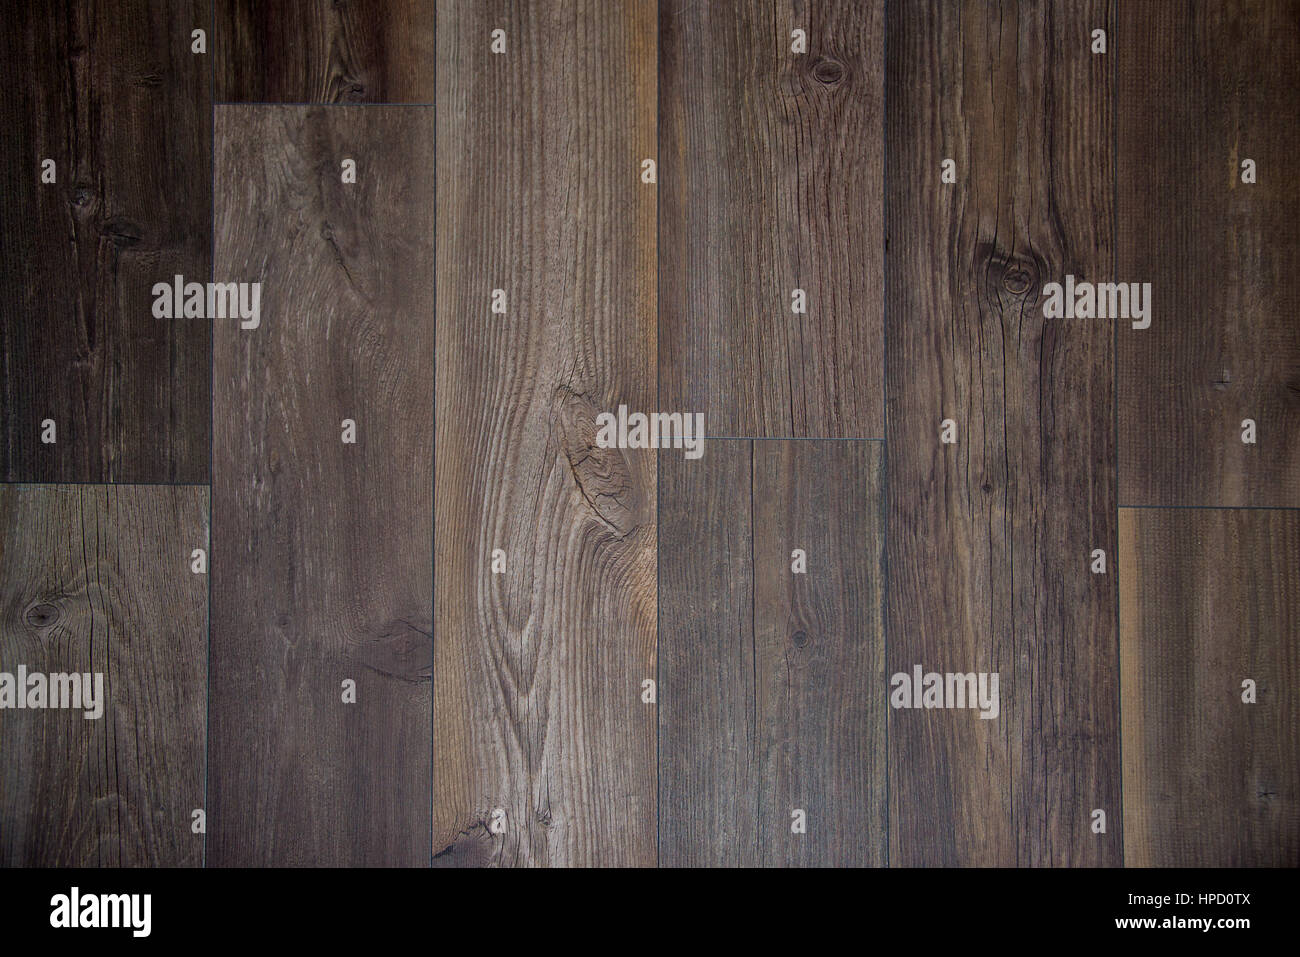 Dark wooden floor background Stock Photo